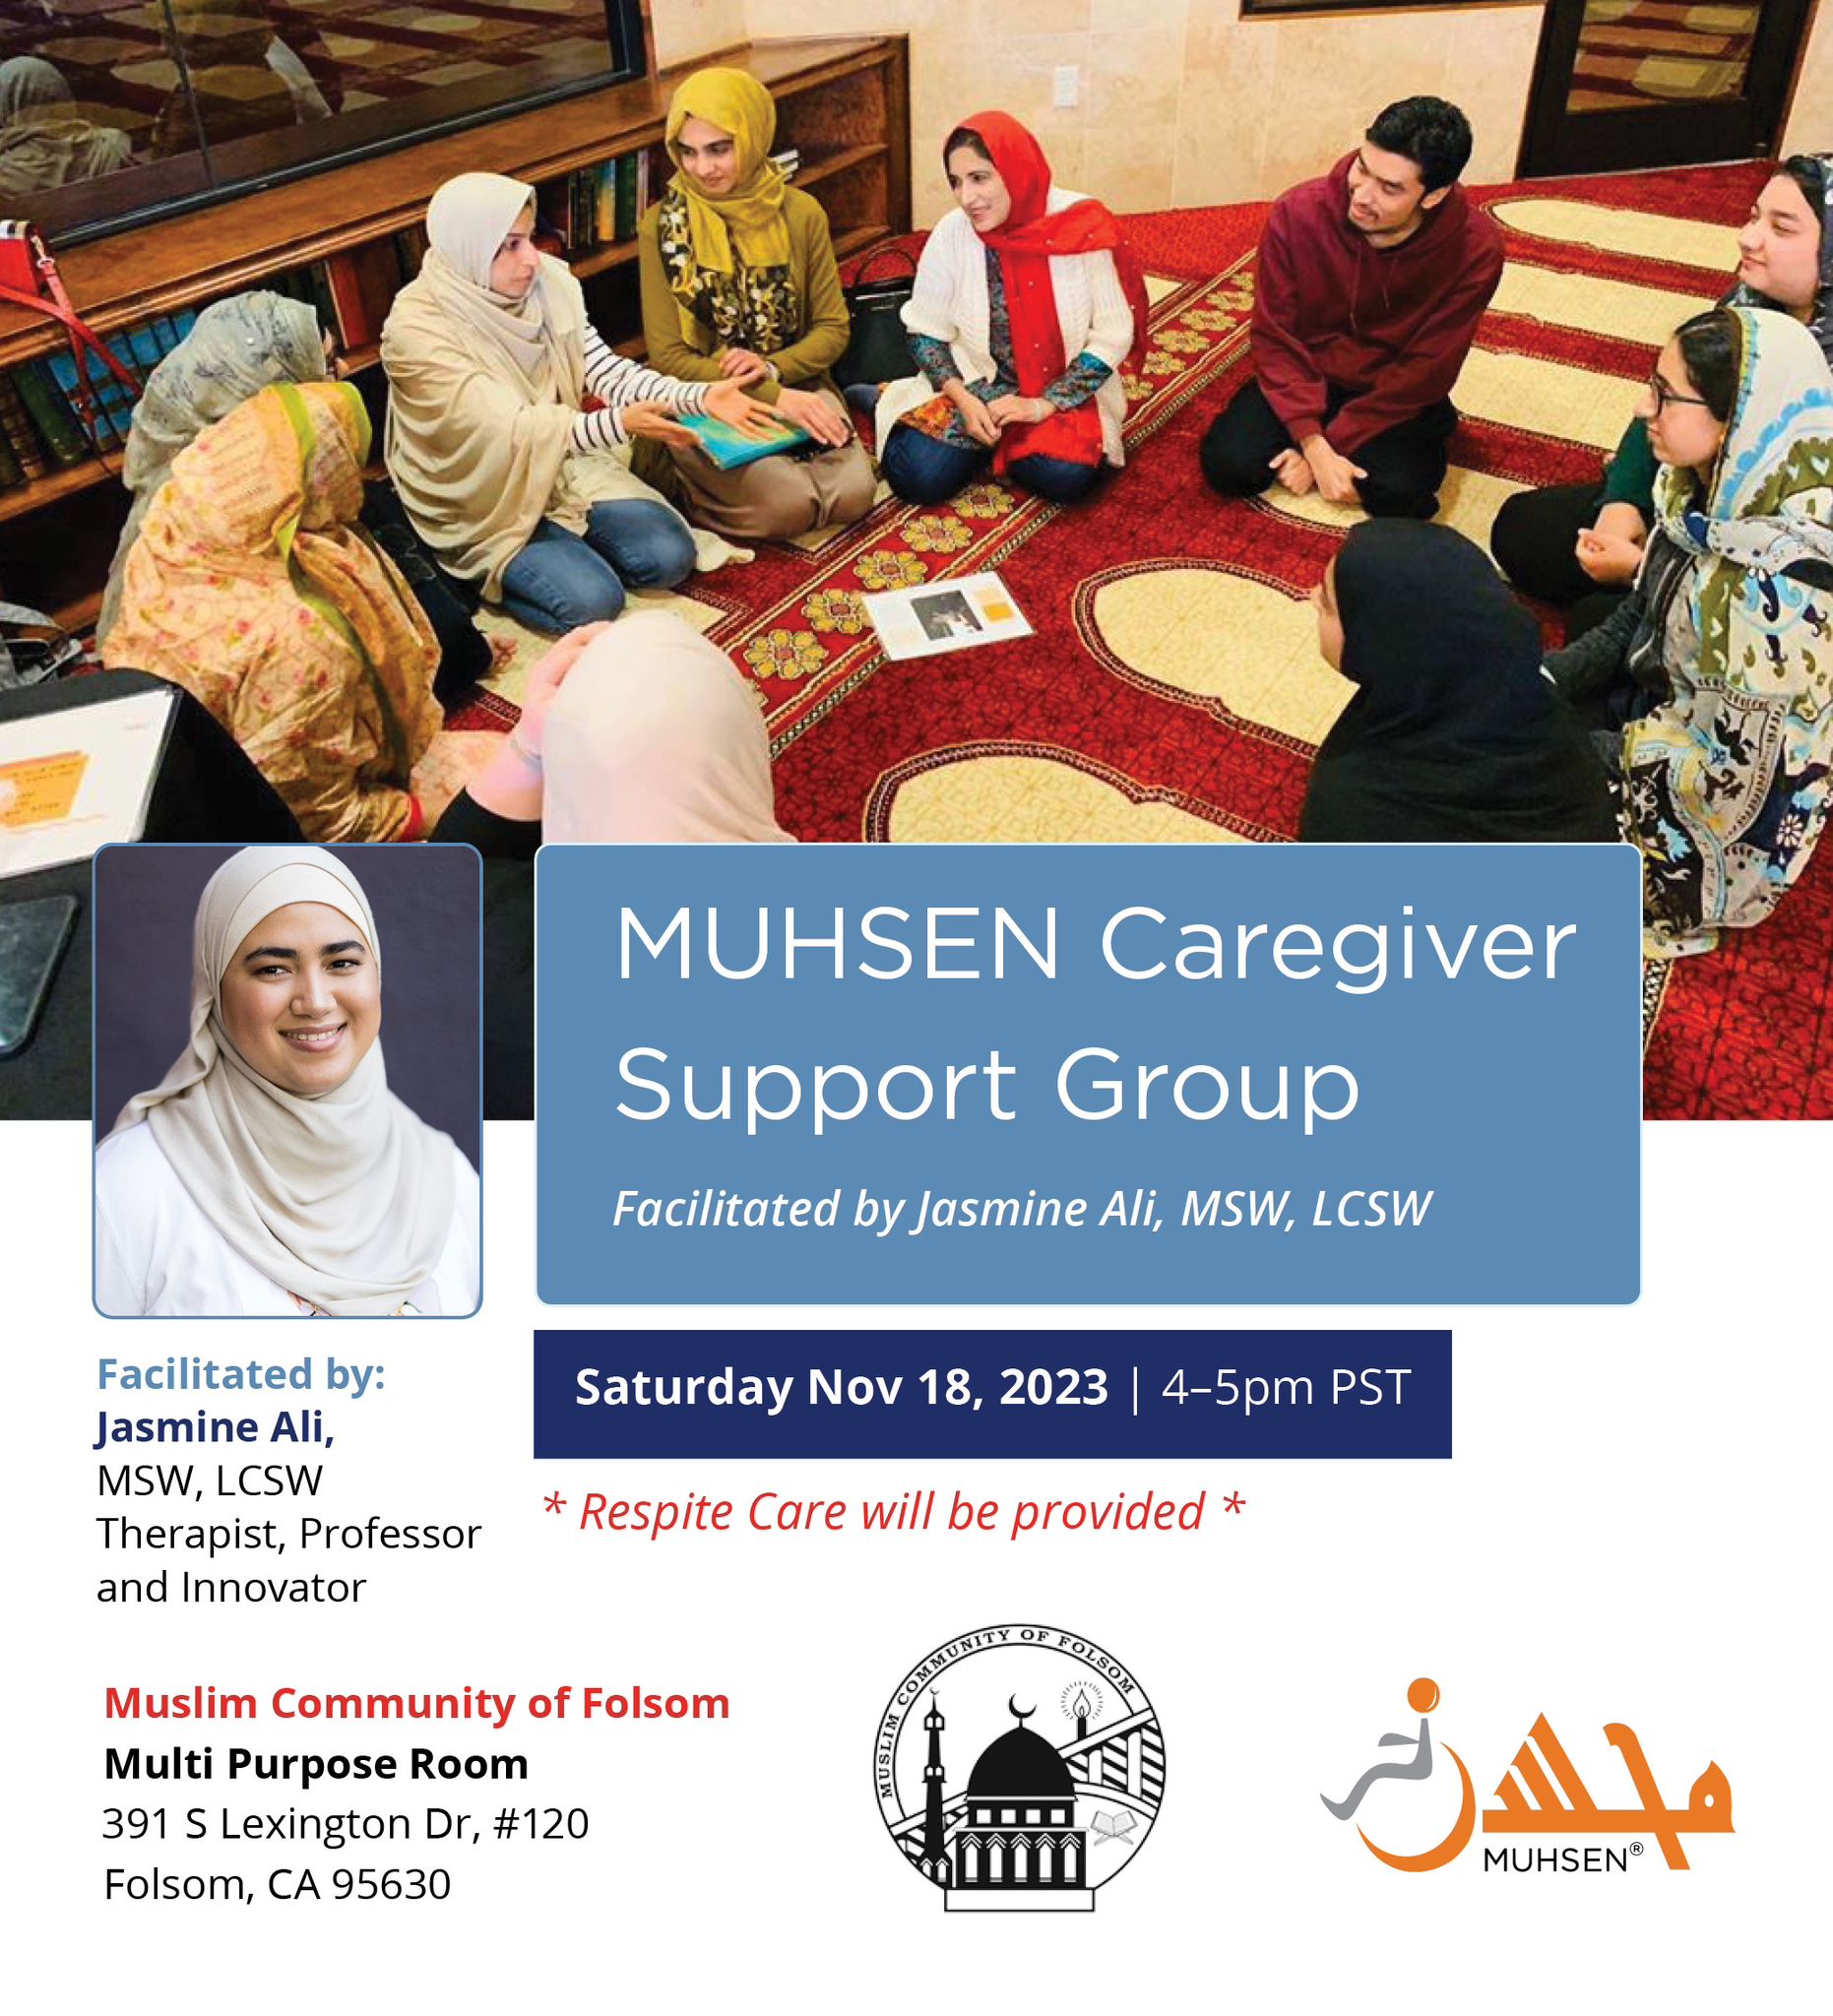 Caregiver Support Group | Muhsen